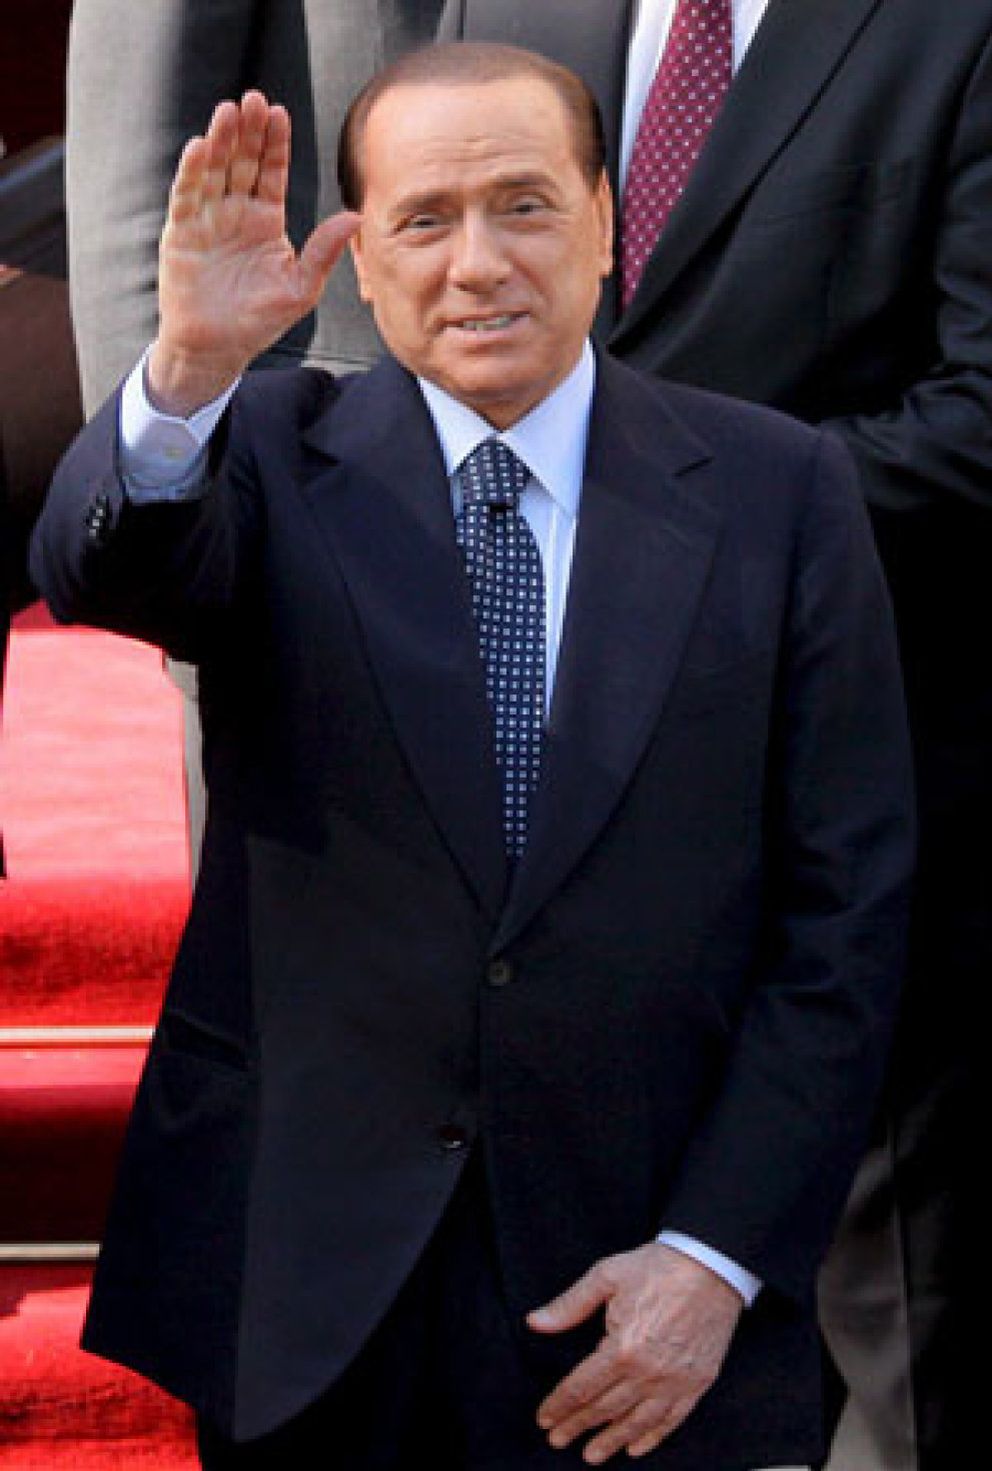 Foto: Mentiras arriesgadas y reiteradas en el matrimonio de Berlusconi